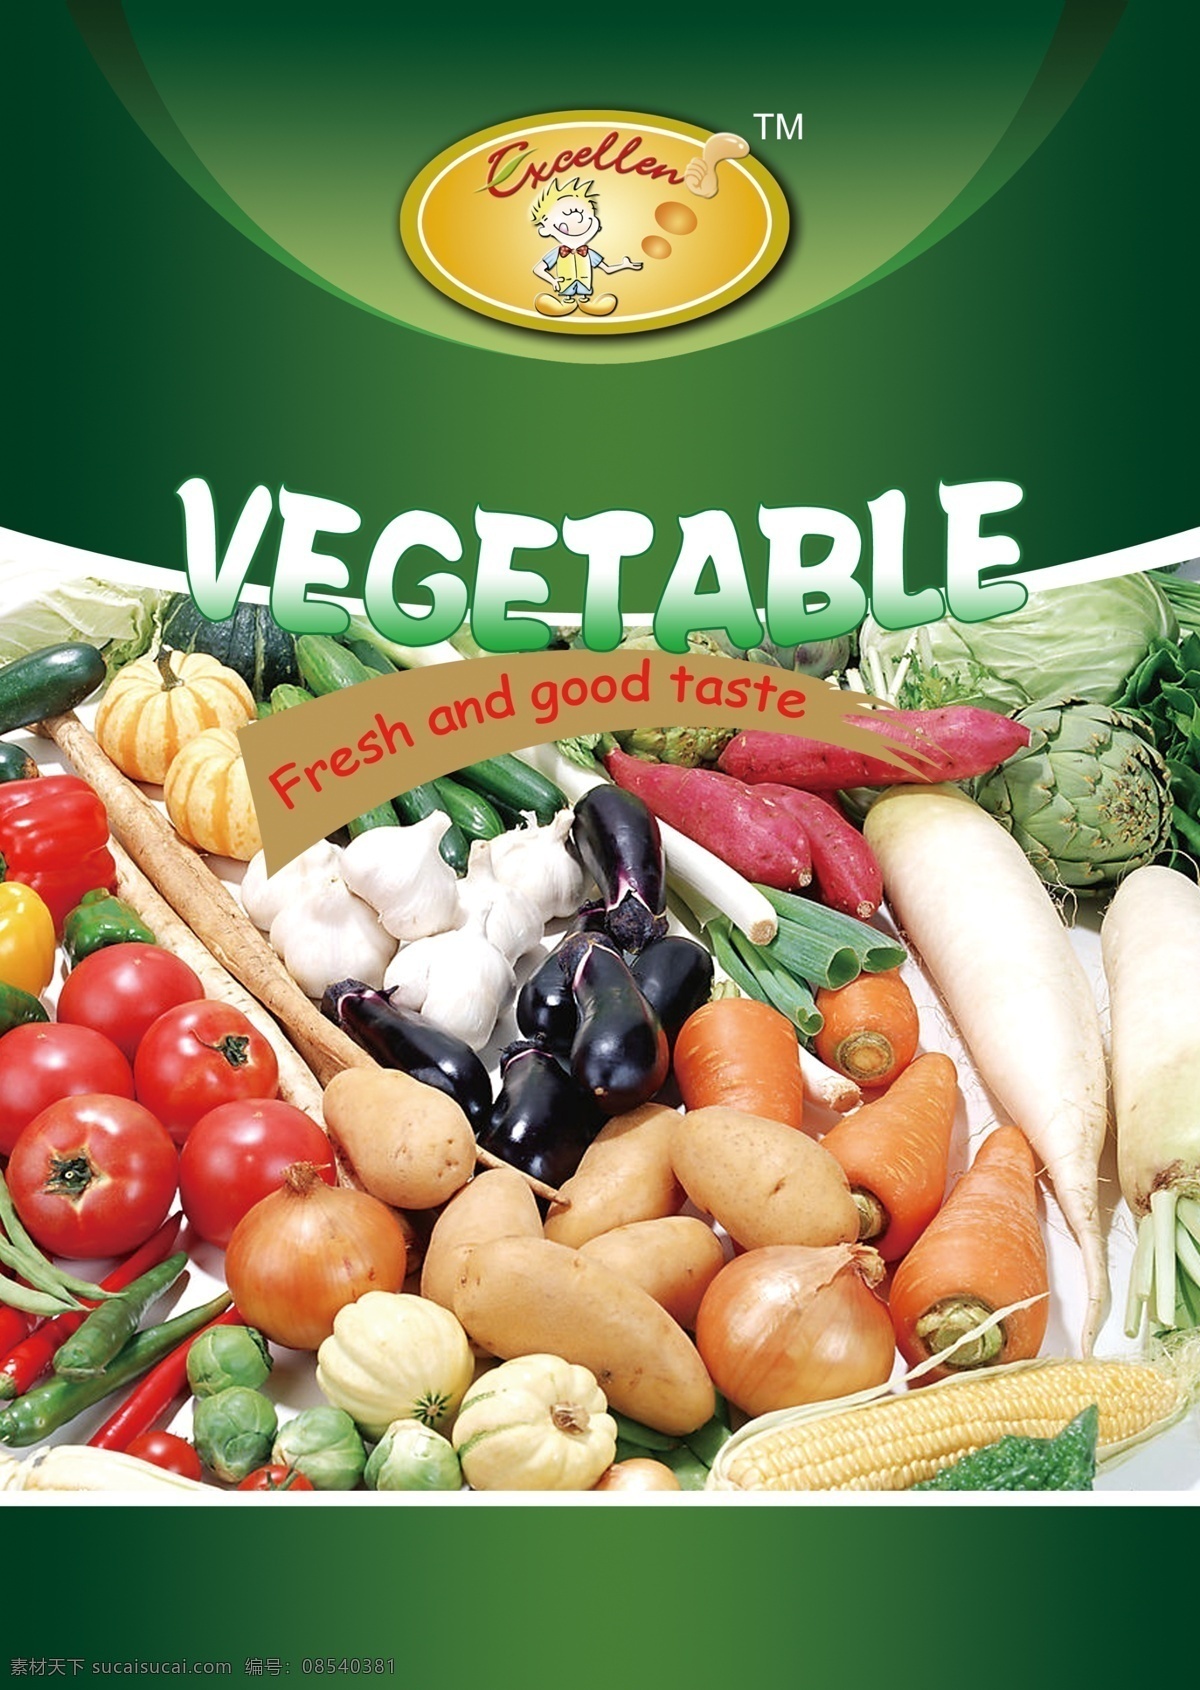 蔬菜 类 宣传 包装设计 广告设计模板 蔬菜广告 源文件 蔬菜类宣传 蔬菜dm宣传 蔬菜包装宣传 风景 生活 旅游餐饮